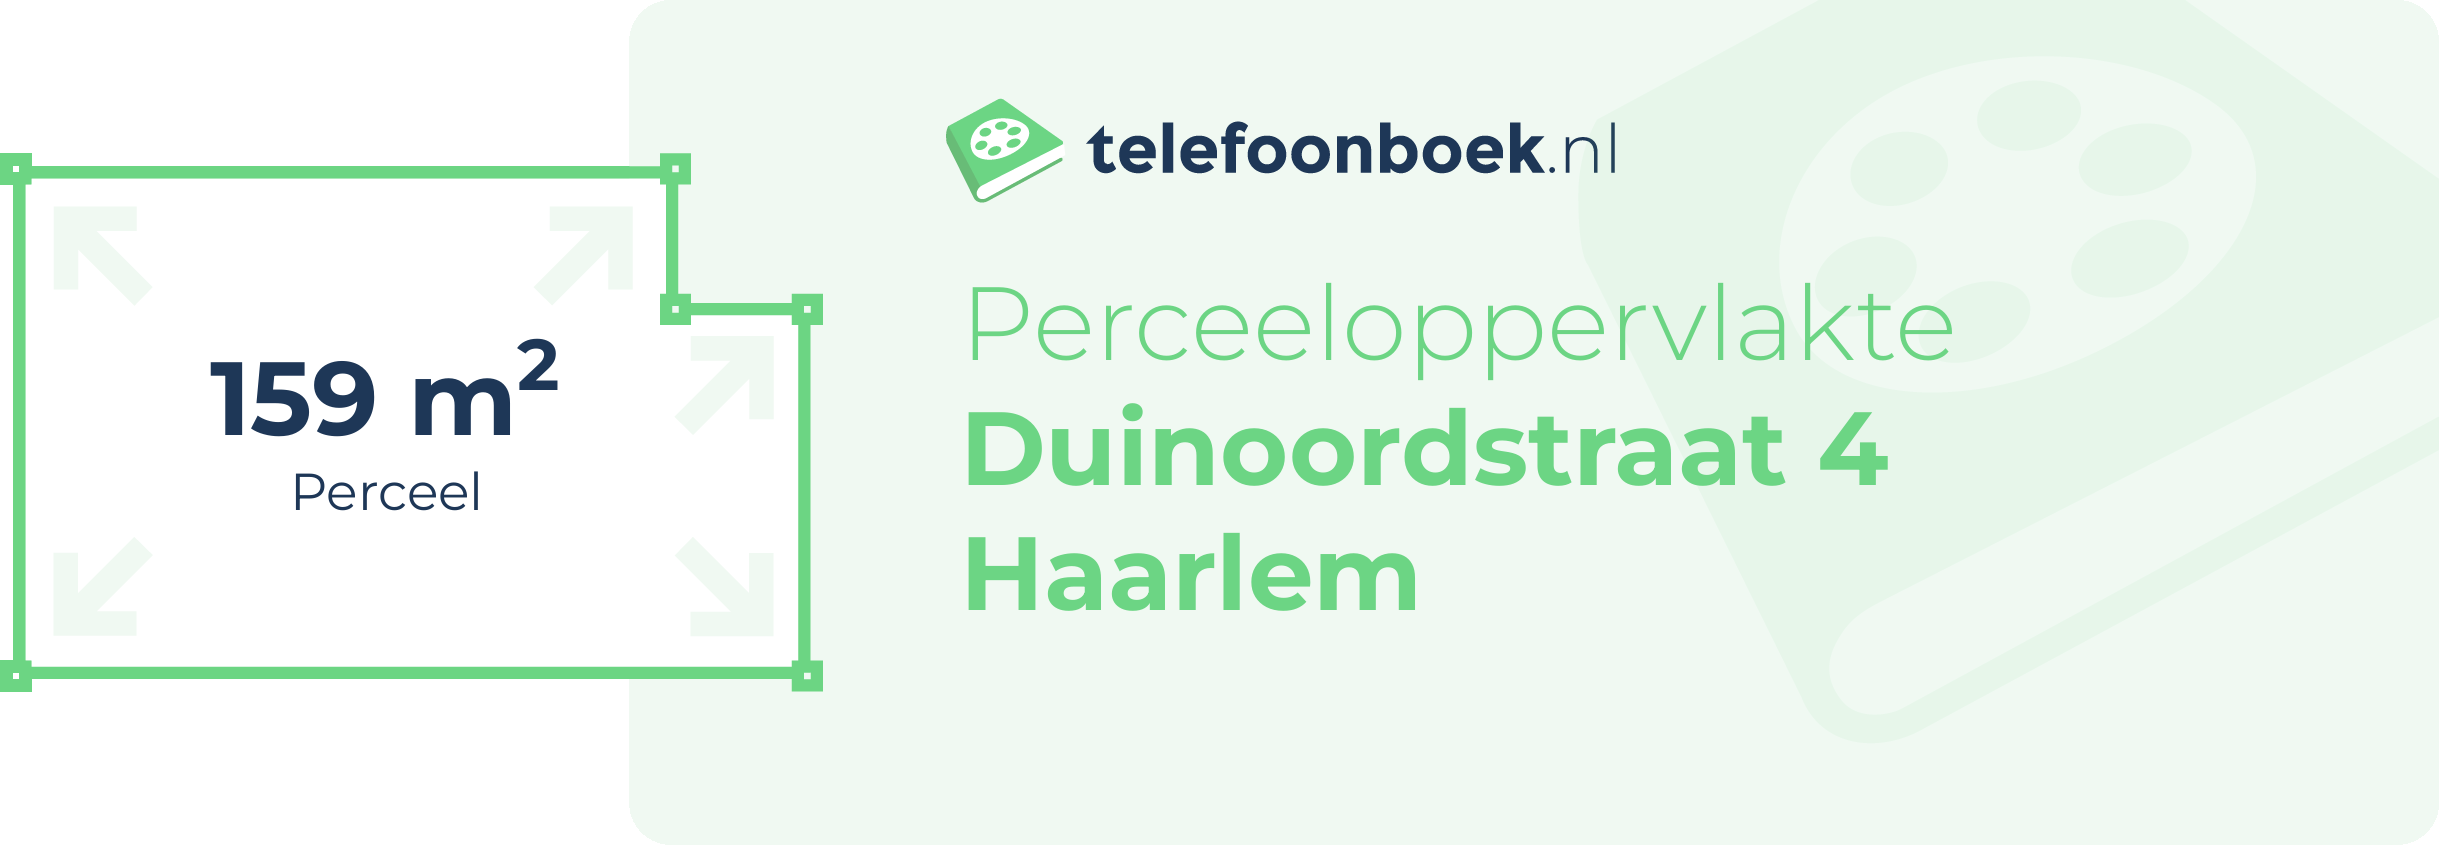 Perceeloppervlakte Duinoordstraat 4 Haarlem